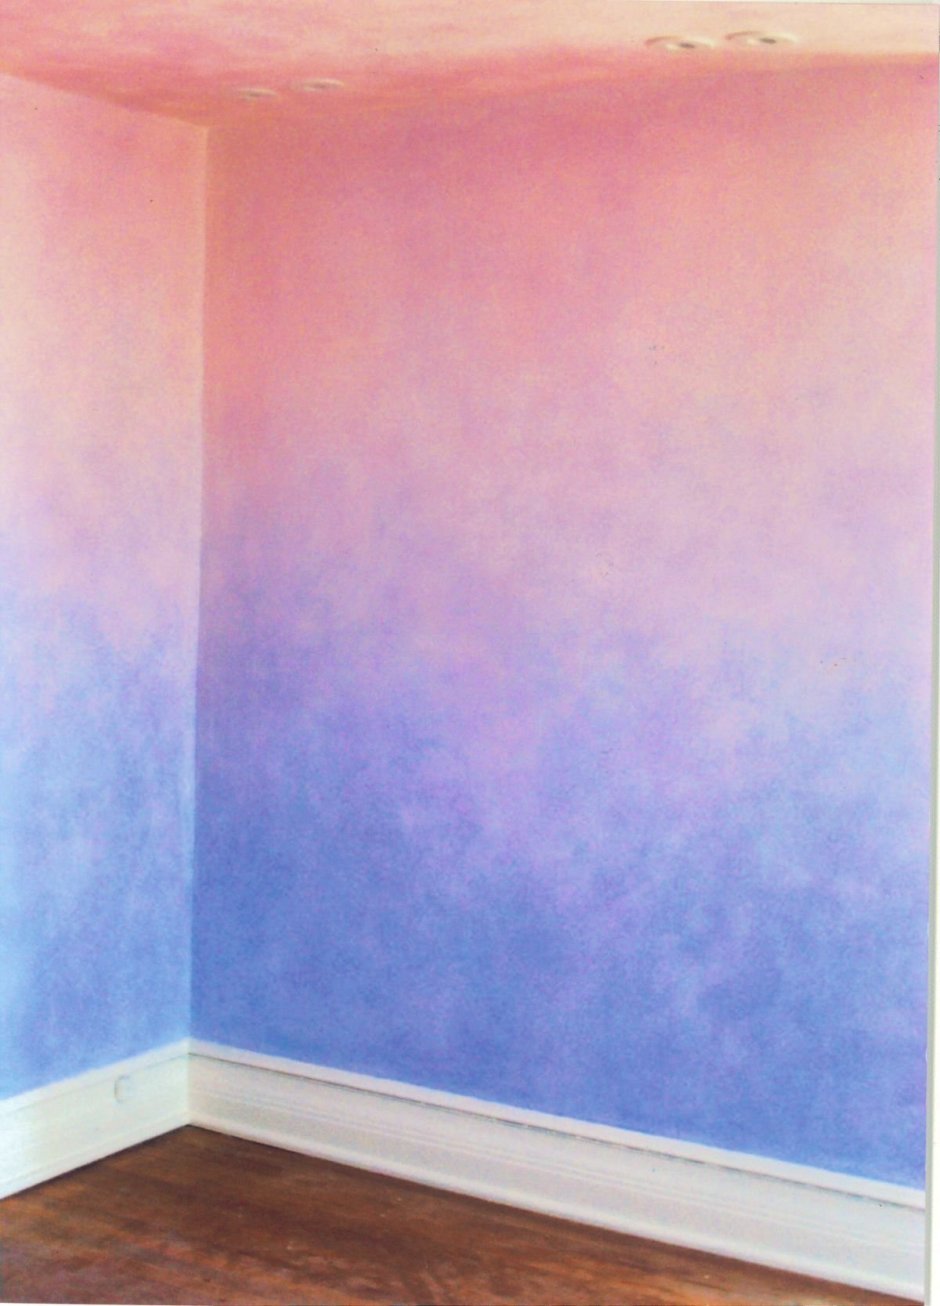 Бирюзовый цвет стен в интерьере